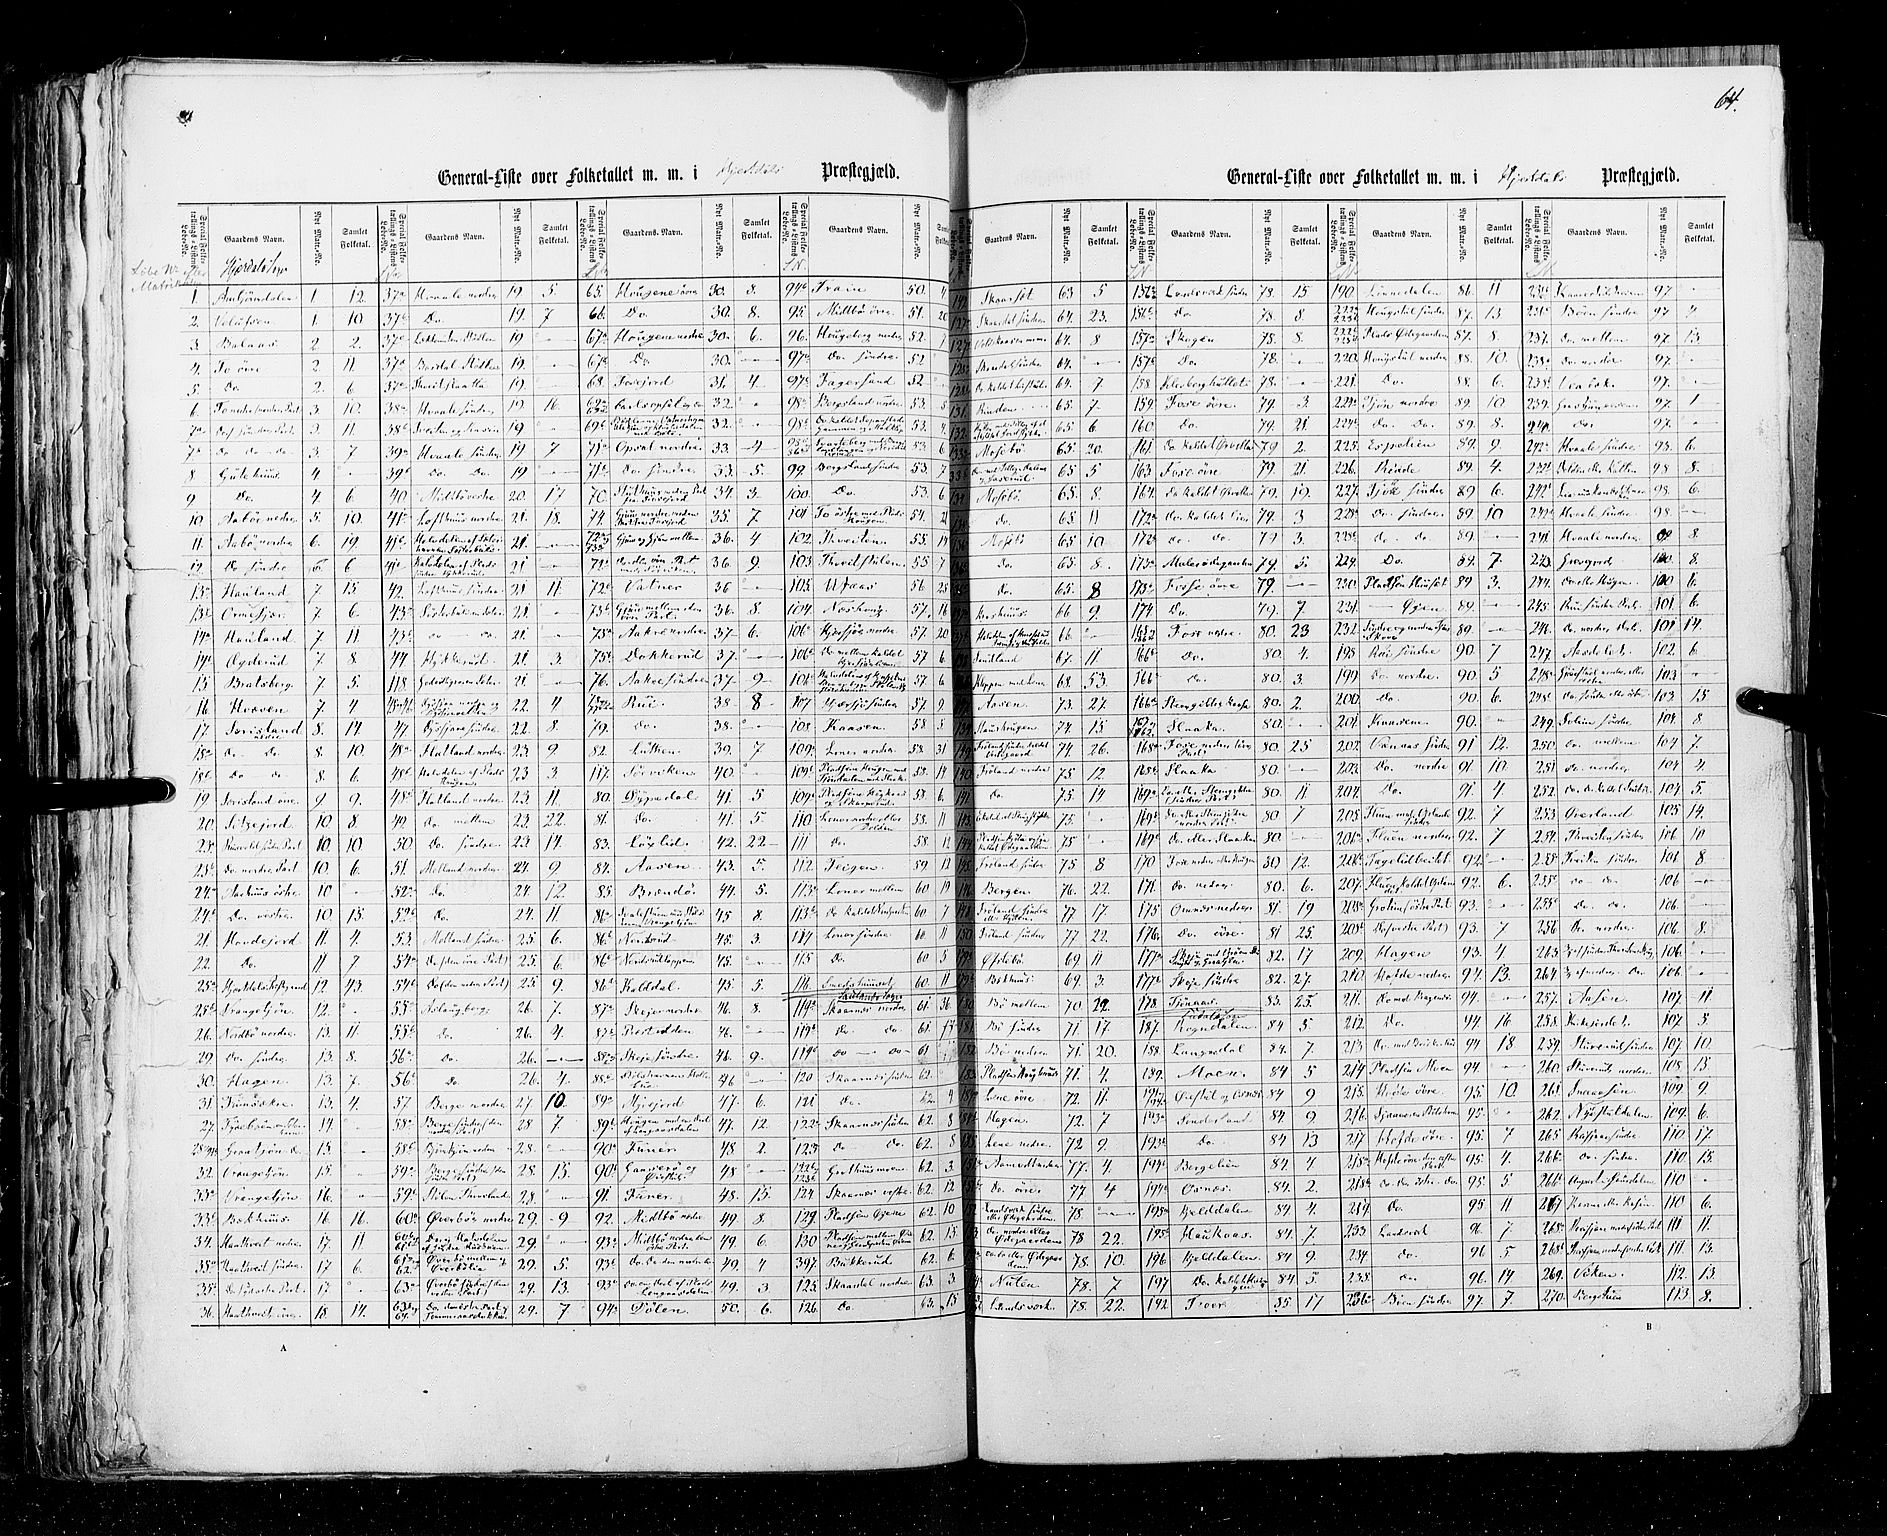 RA, Census 1855, vol. 3: Bratsberg amt, Nedenes amt og Lister og Mandal amt, 1855, p. 64